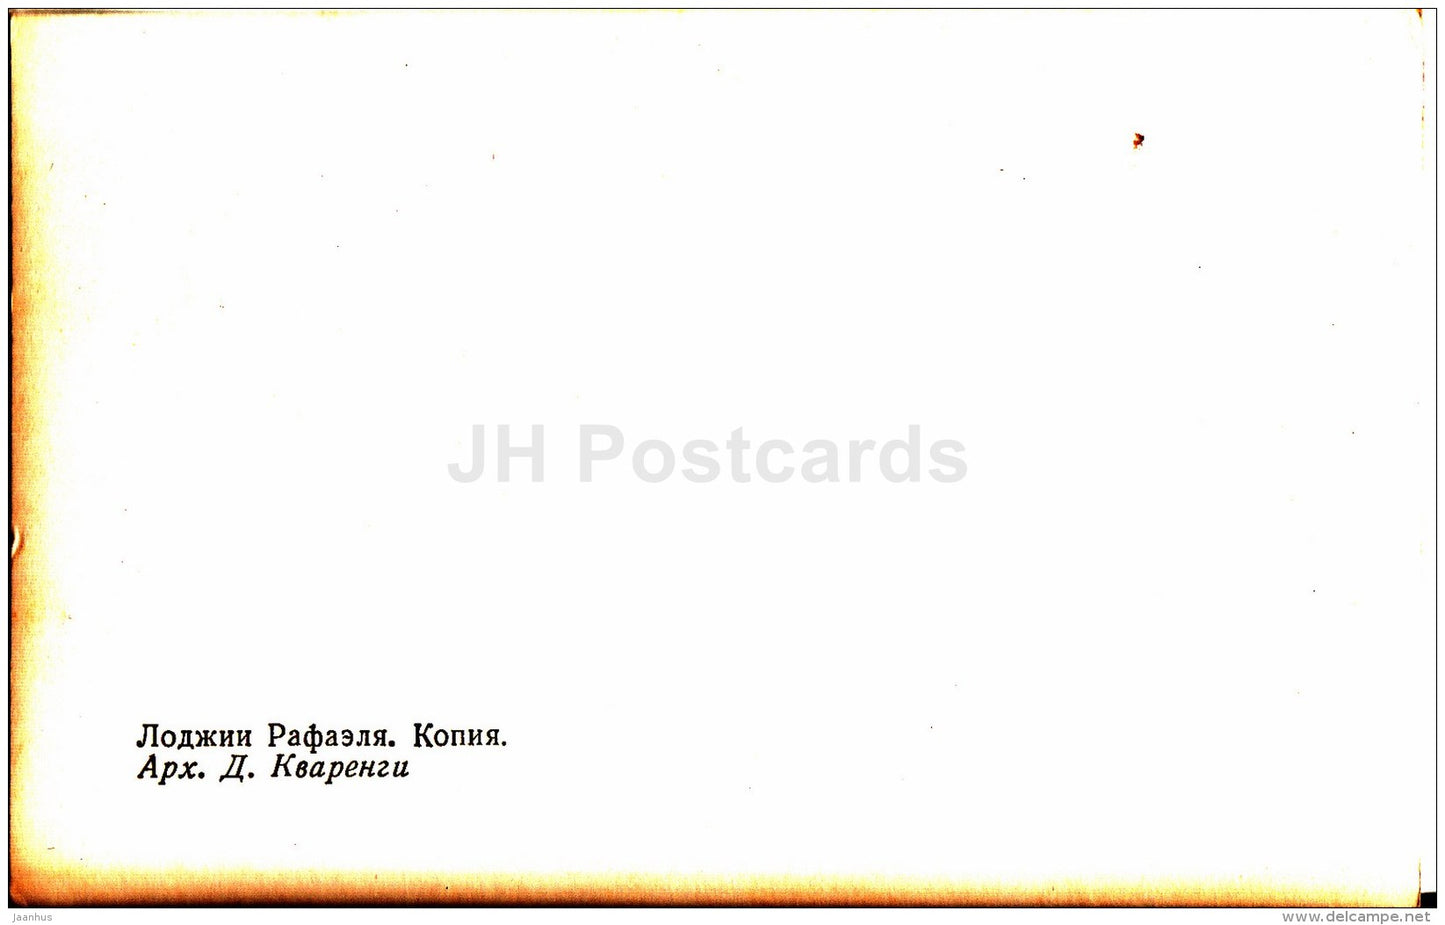 Raphael loggias - The New Hermitage - Leningrad - St. Petersburg - Russia USSR - unused - JH Postcards